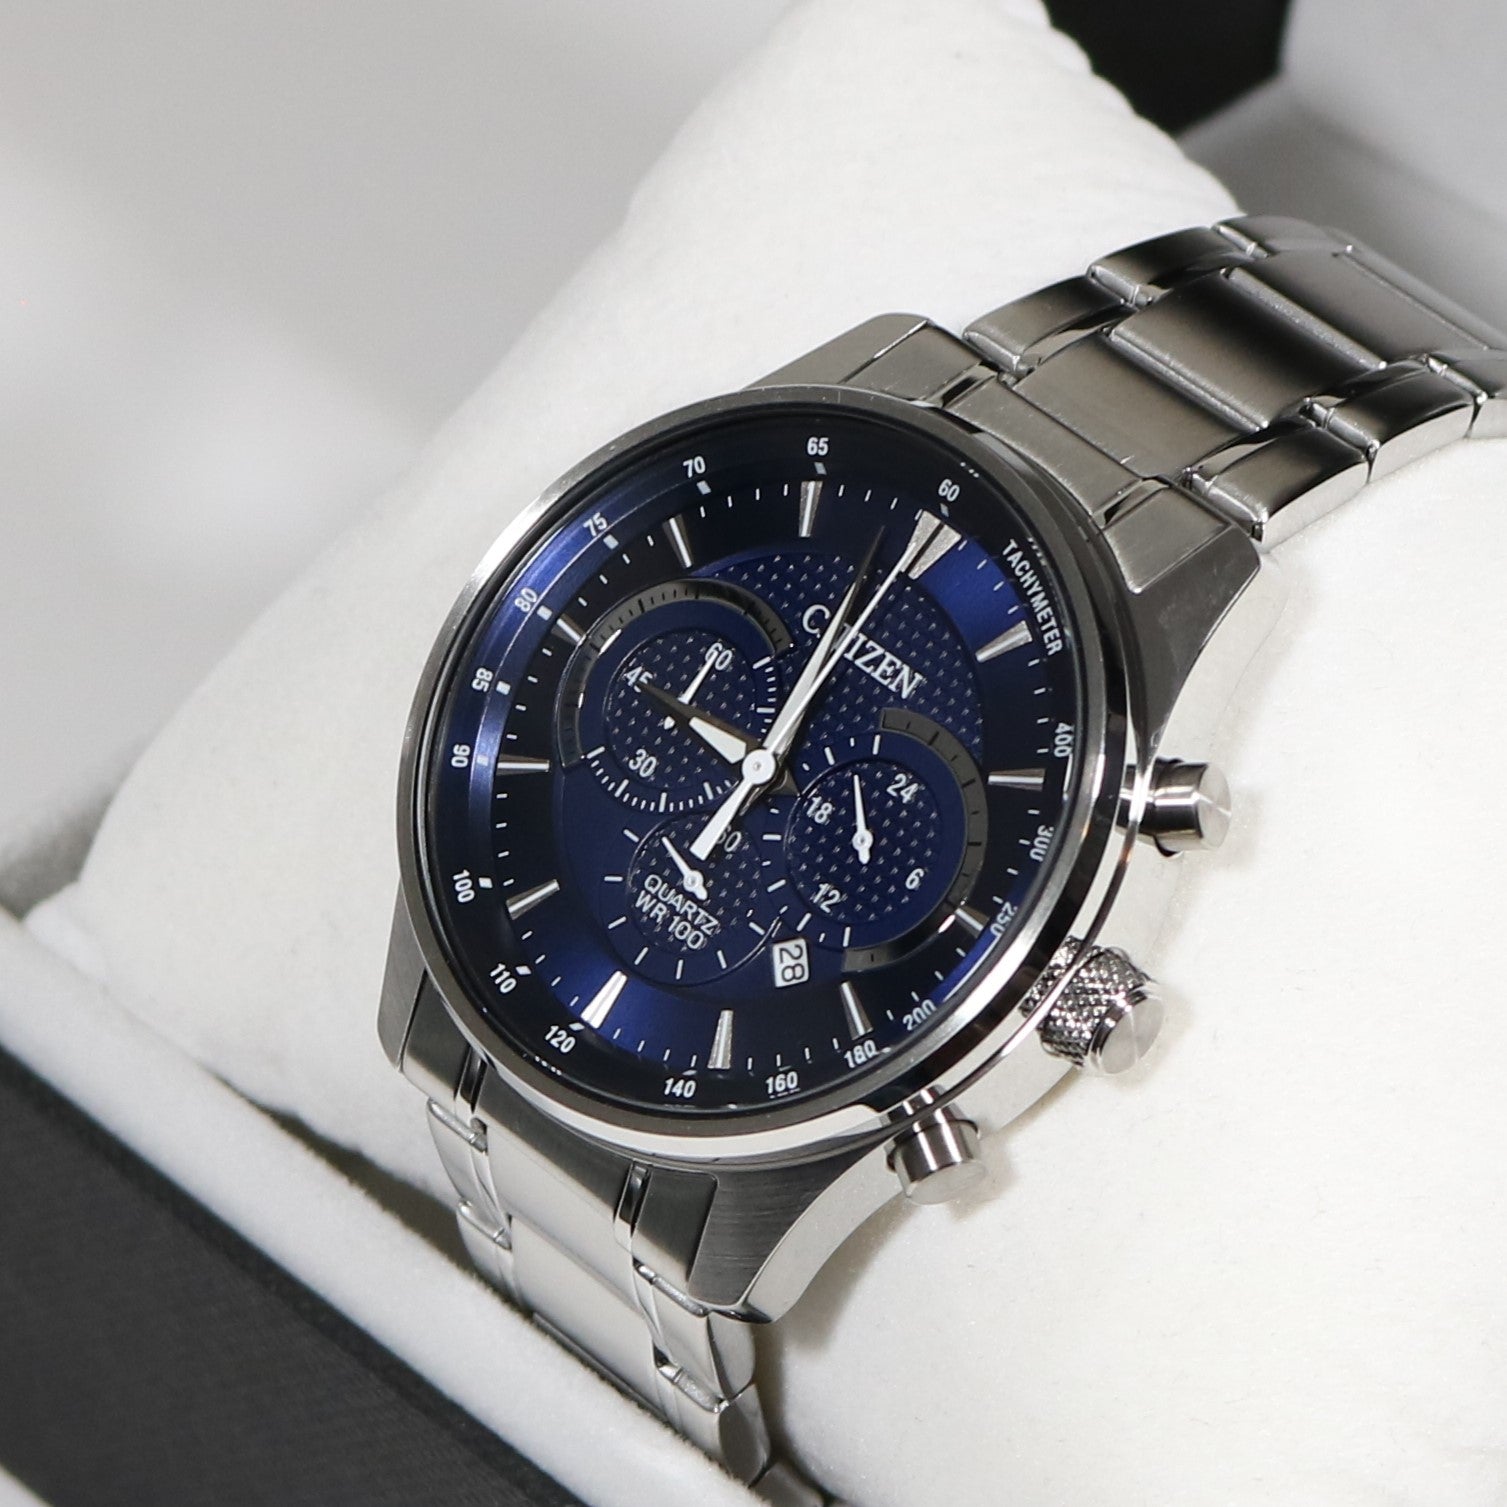 Citizen Quartz Men's Blue Dial Chronograph Stainless Steel Watch